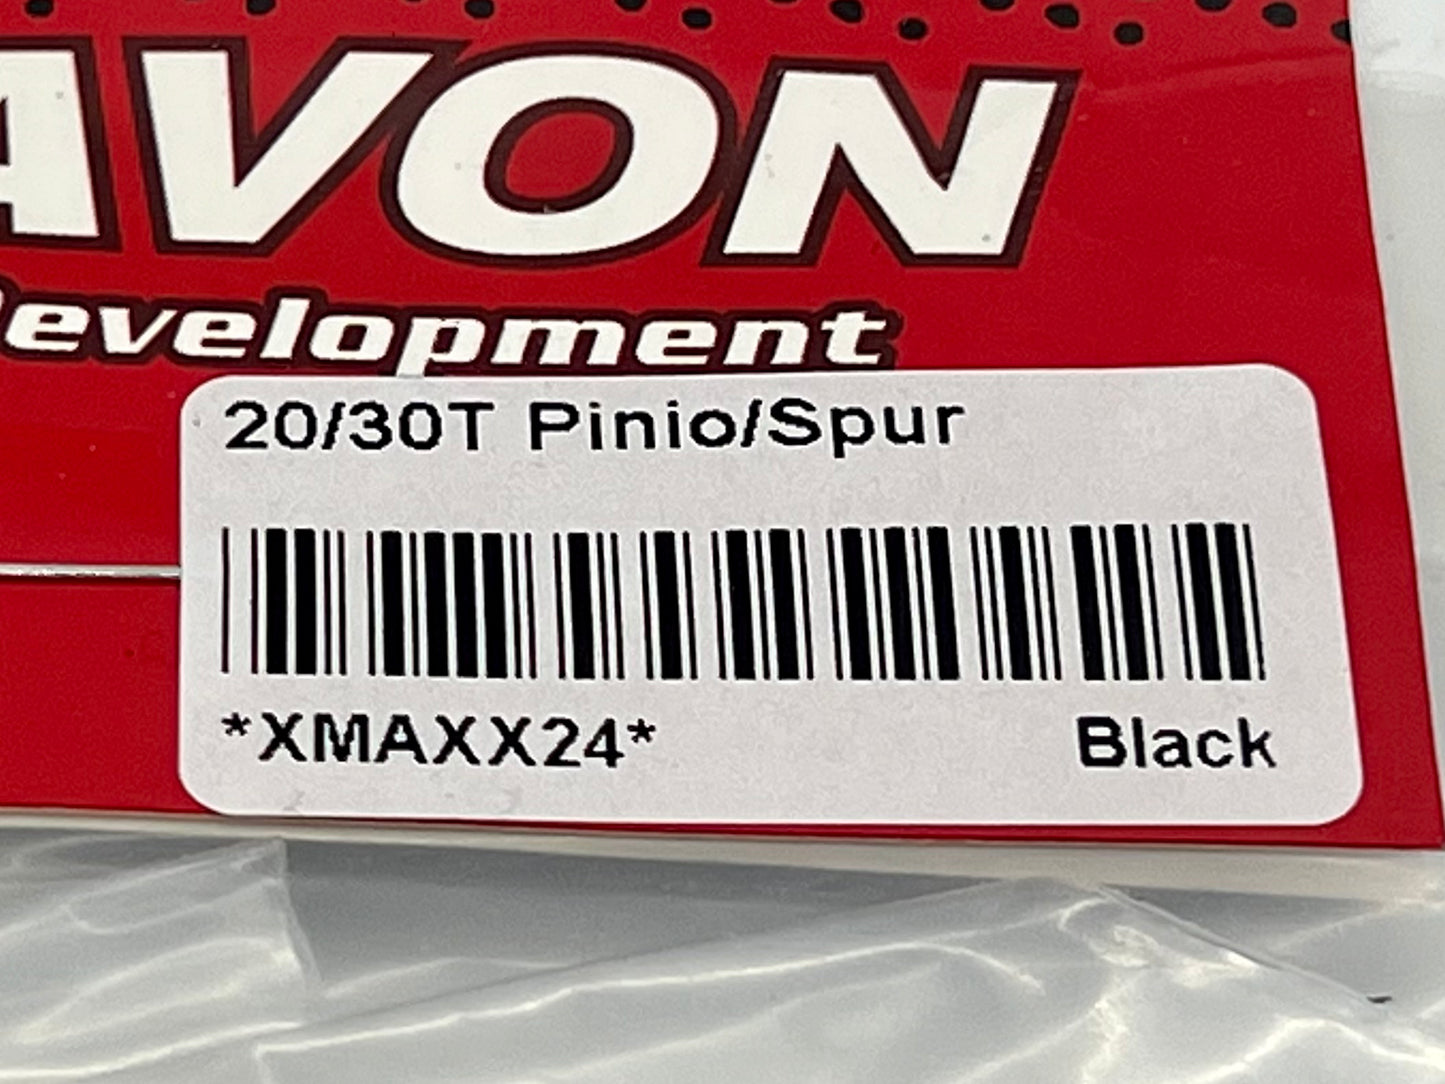 VITAVON CNC 45# HD 1.5Mod 20/30T Pinion/Spur Gear for X MAXX XRT 1/5